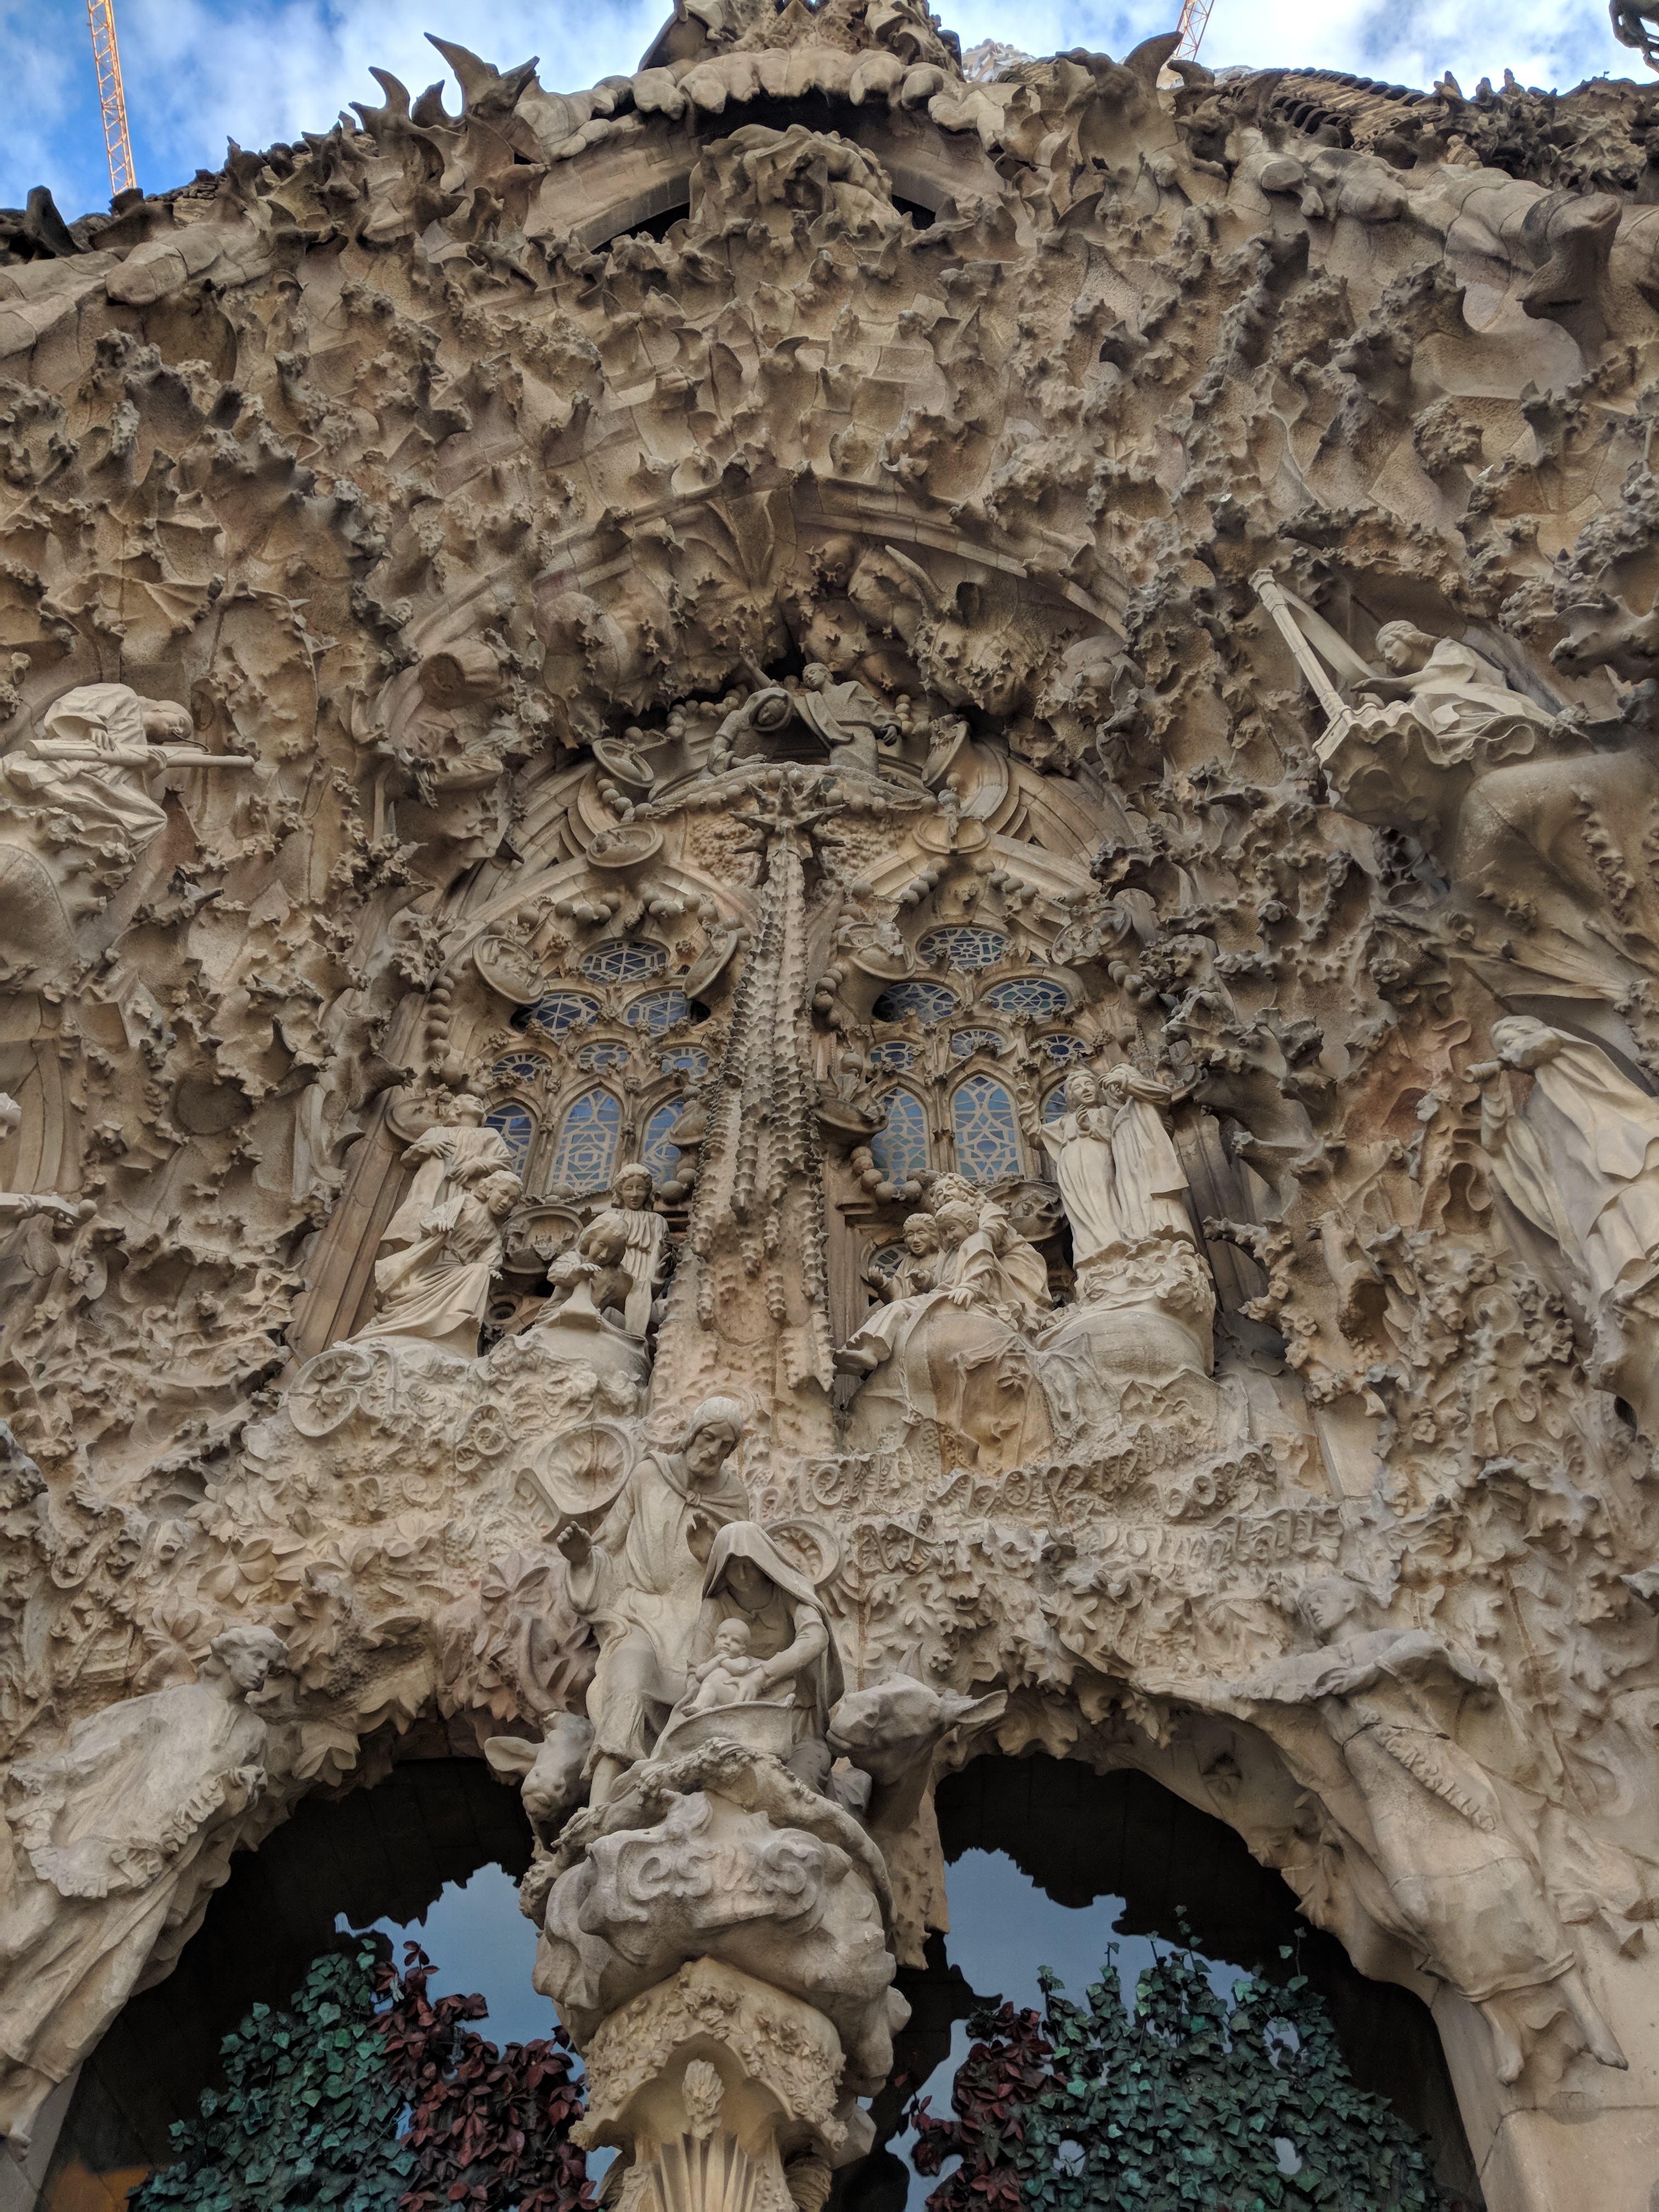 5 reasons to Visit Sagrada Familia - Four Thousand Weeks